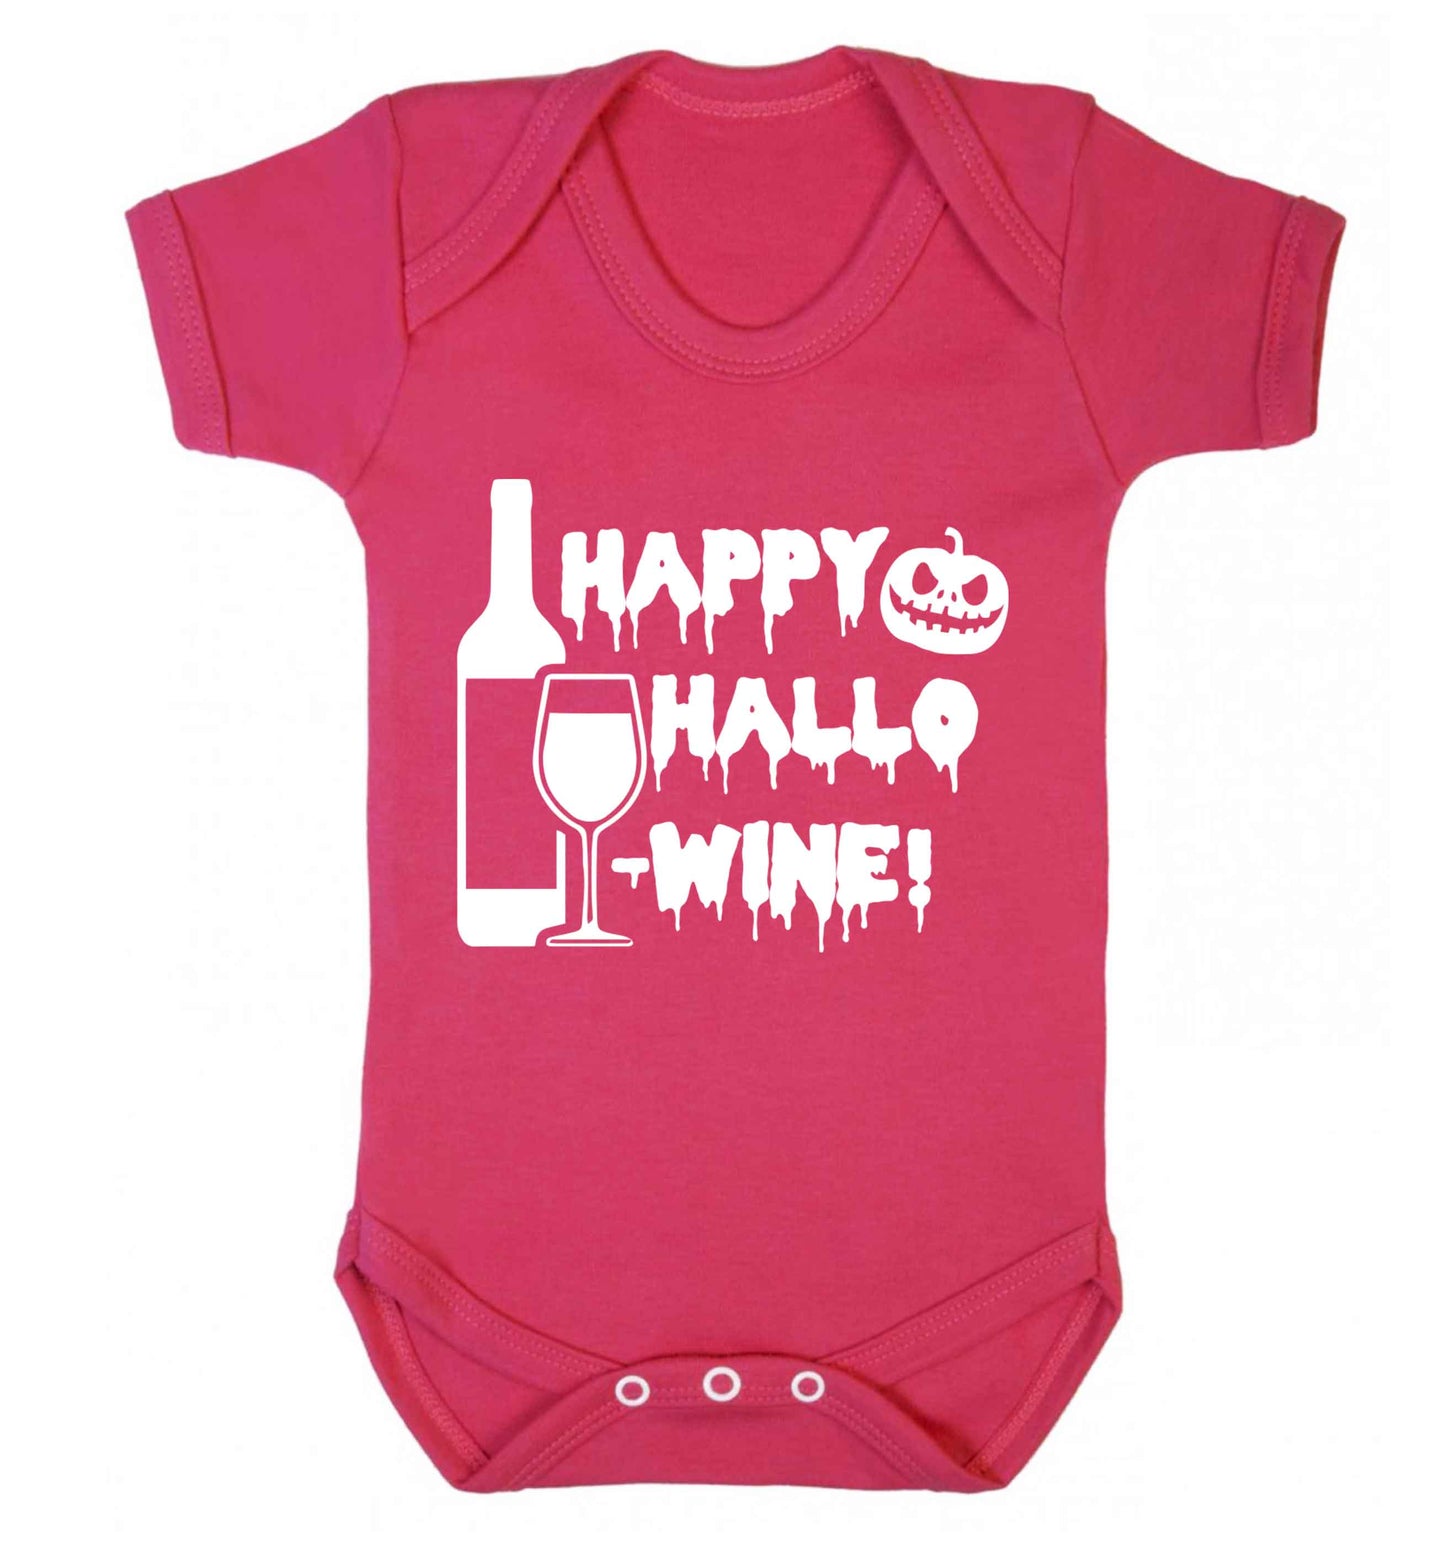 Happy hallow-wine Baby Vest dark pink 18-24 months